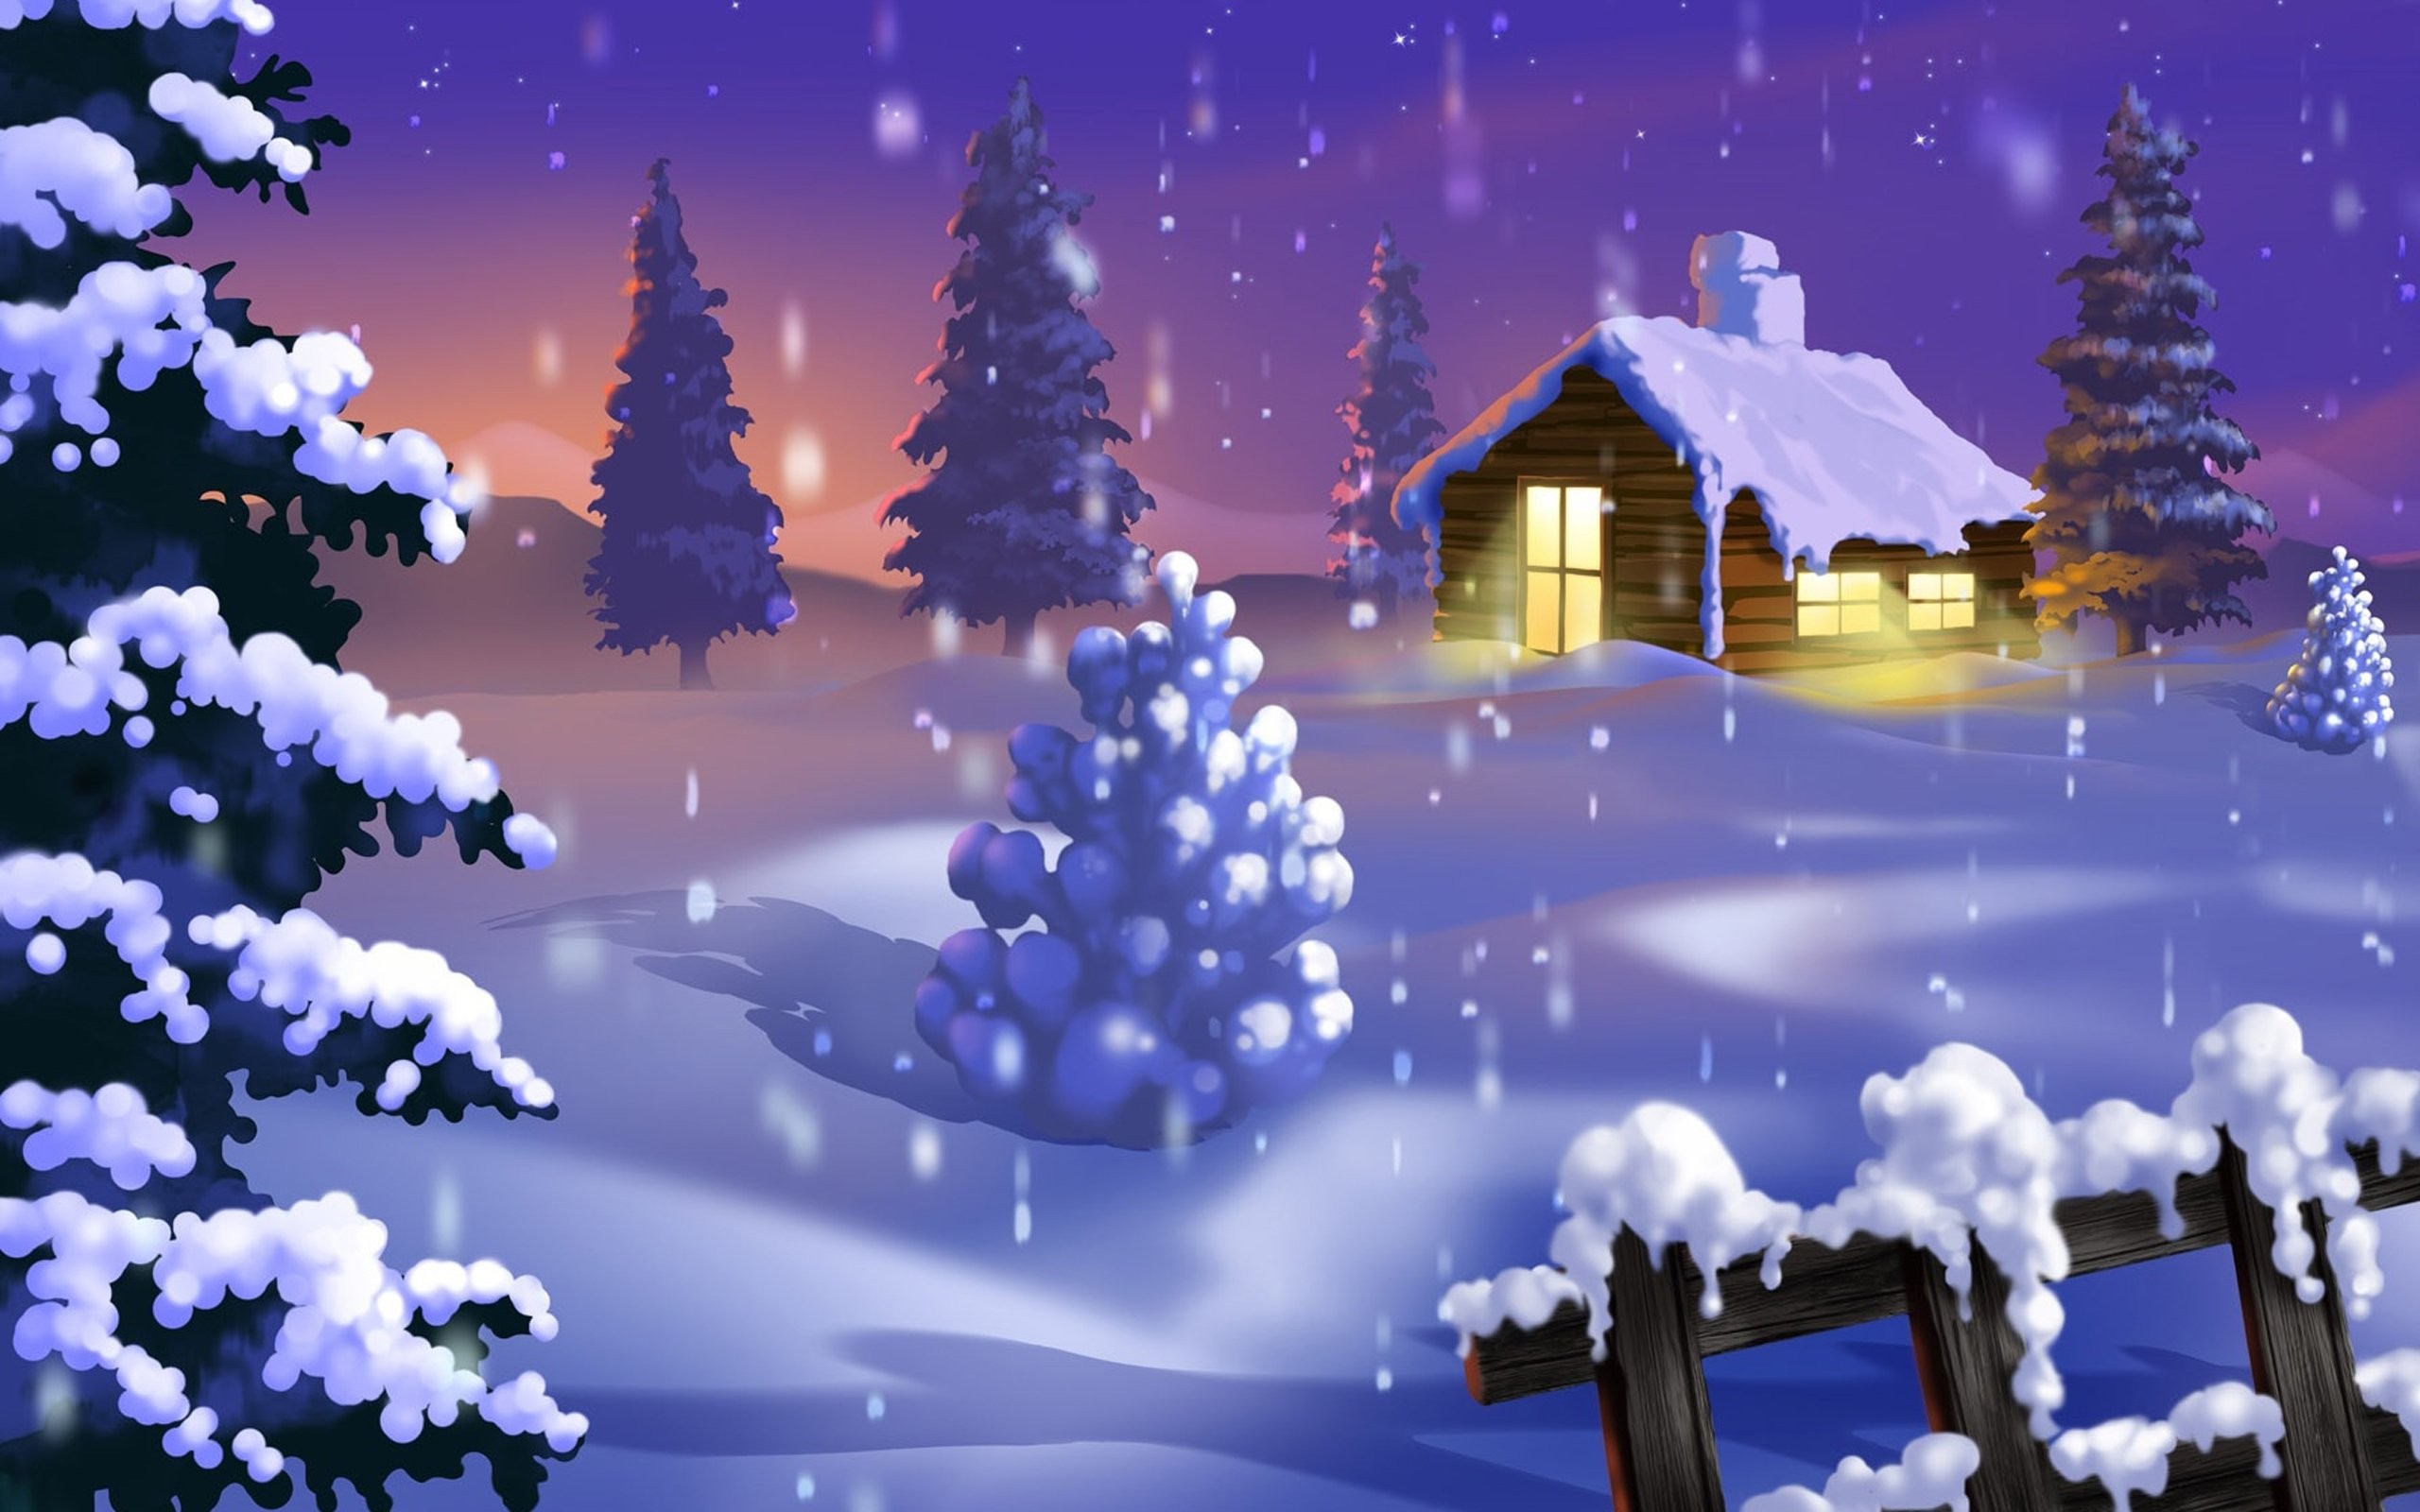 Happy Winter Season Wishes - HD Wallpaper 